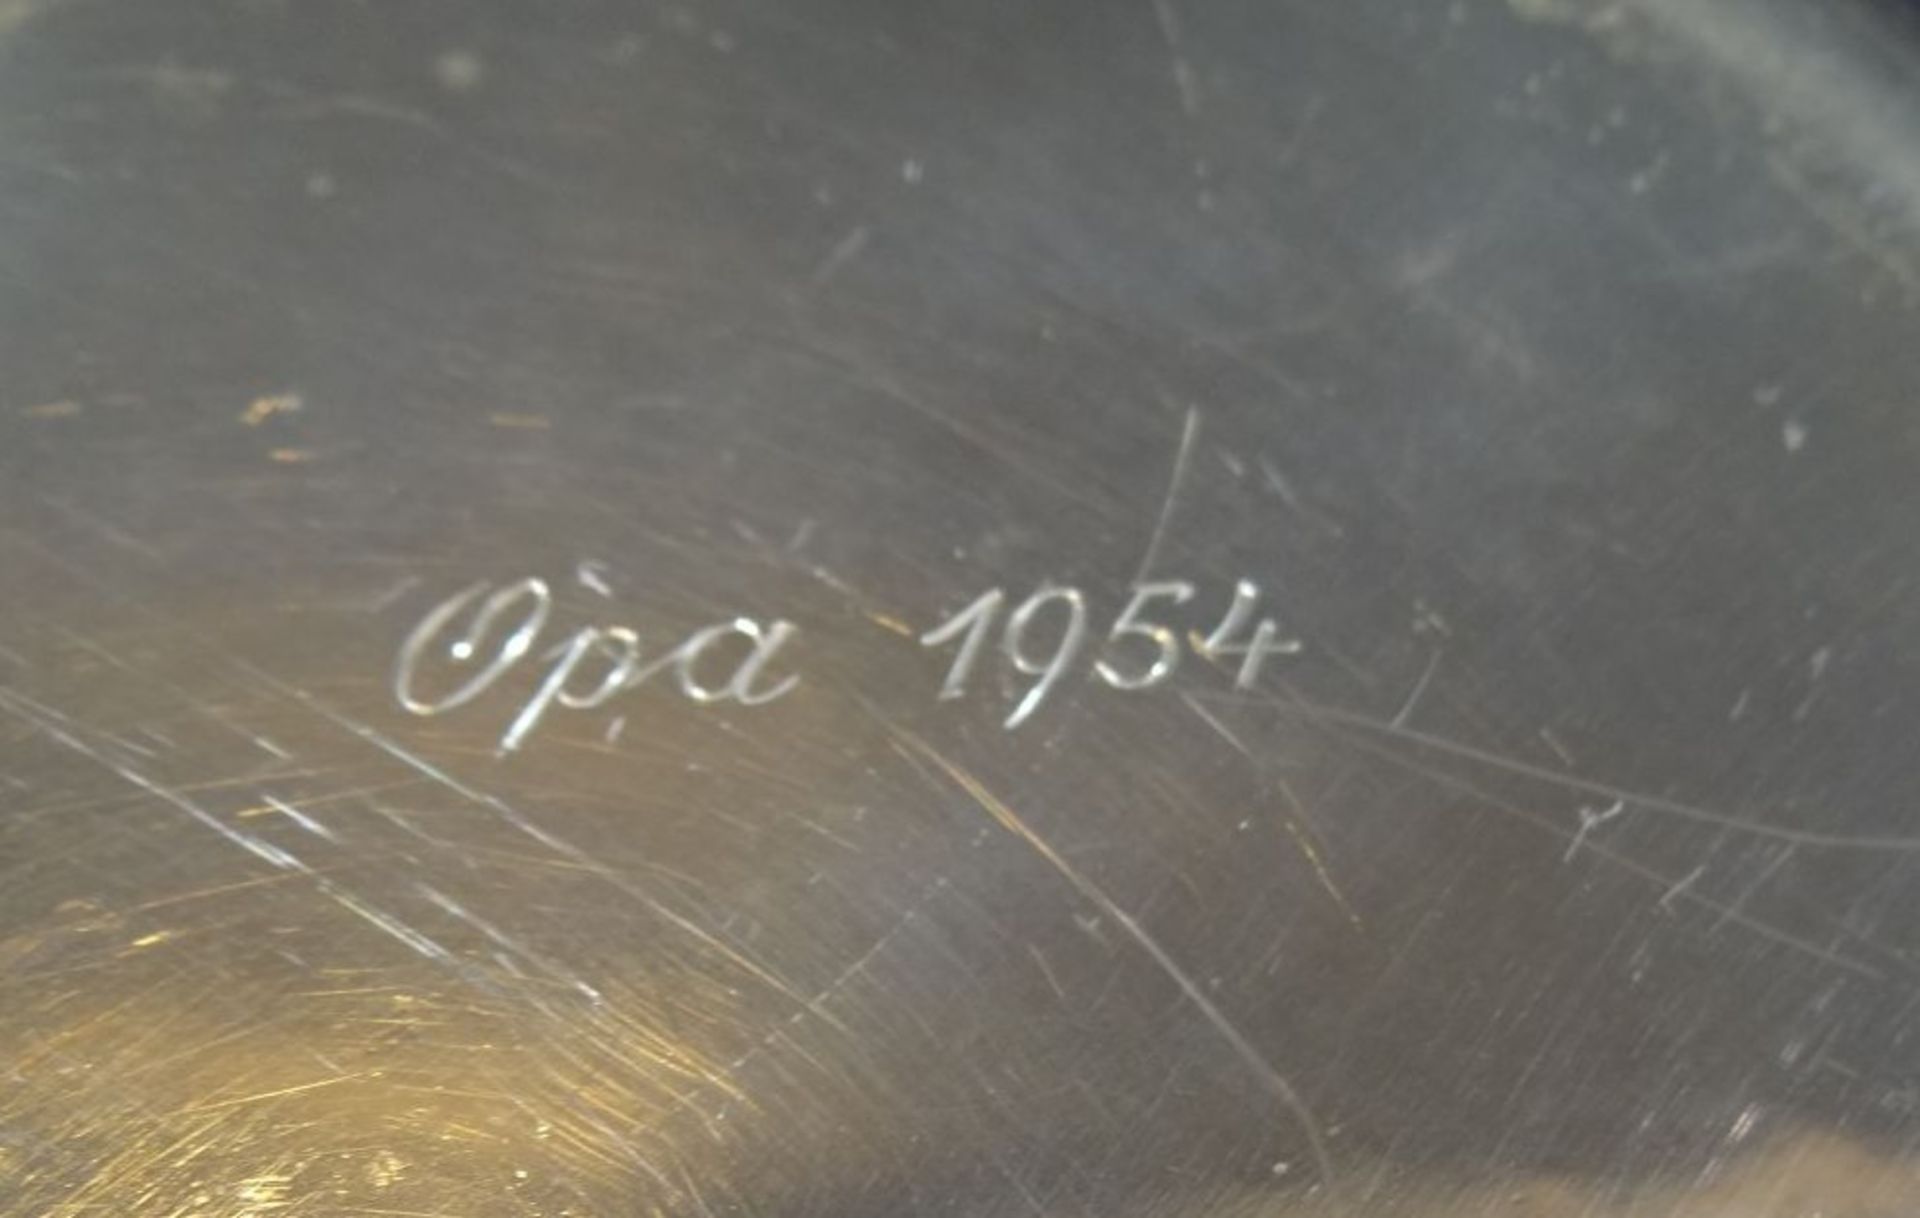 kl. Schale, Silber-835- "WTB", verso beschriftet "Opa 1954", D-17 cm, 104 gr. - Image 5 of 5